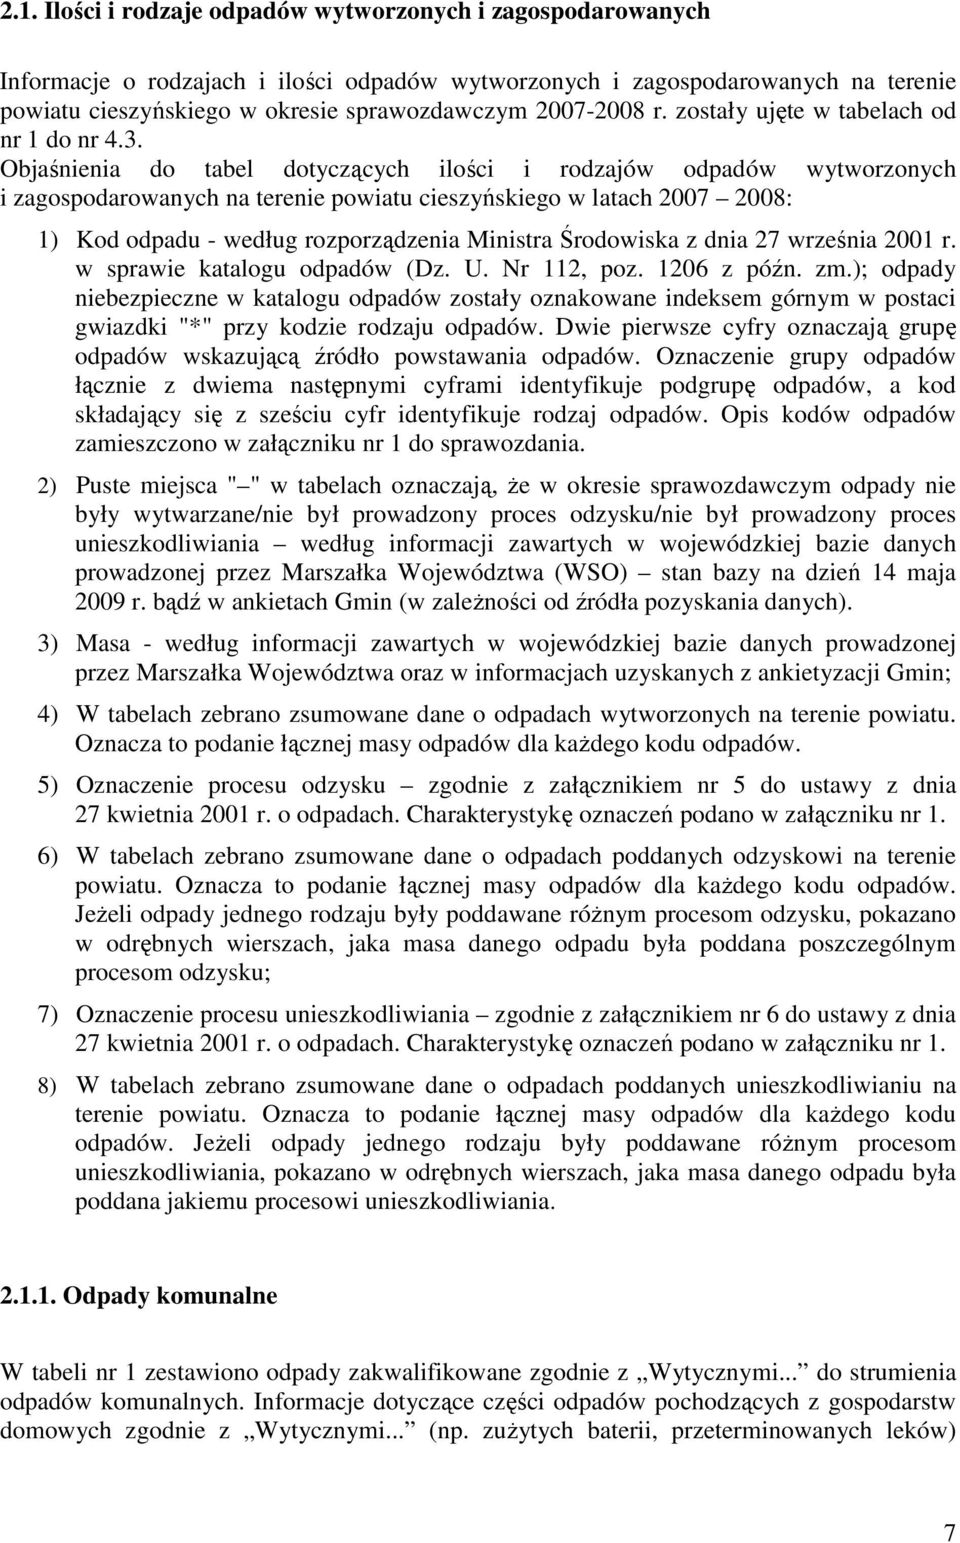 Objaśnienia do tabel dotyczących ilości i rodzajów odpadów wytworzonych i zagospodarowanych na terenie powiatu cieszyńskiego w latach 2007 2008: 1) Kod odpadu - według rozporządzenia Ministra